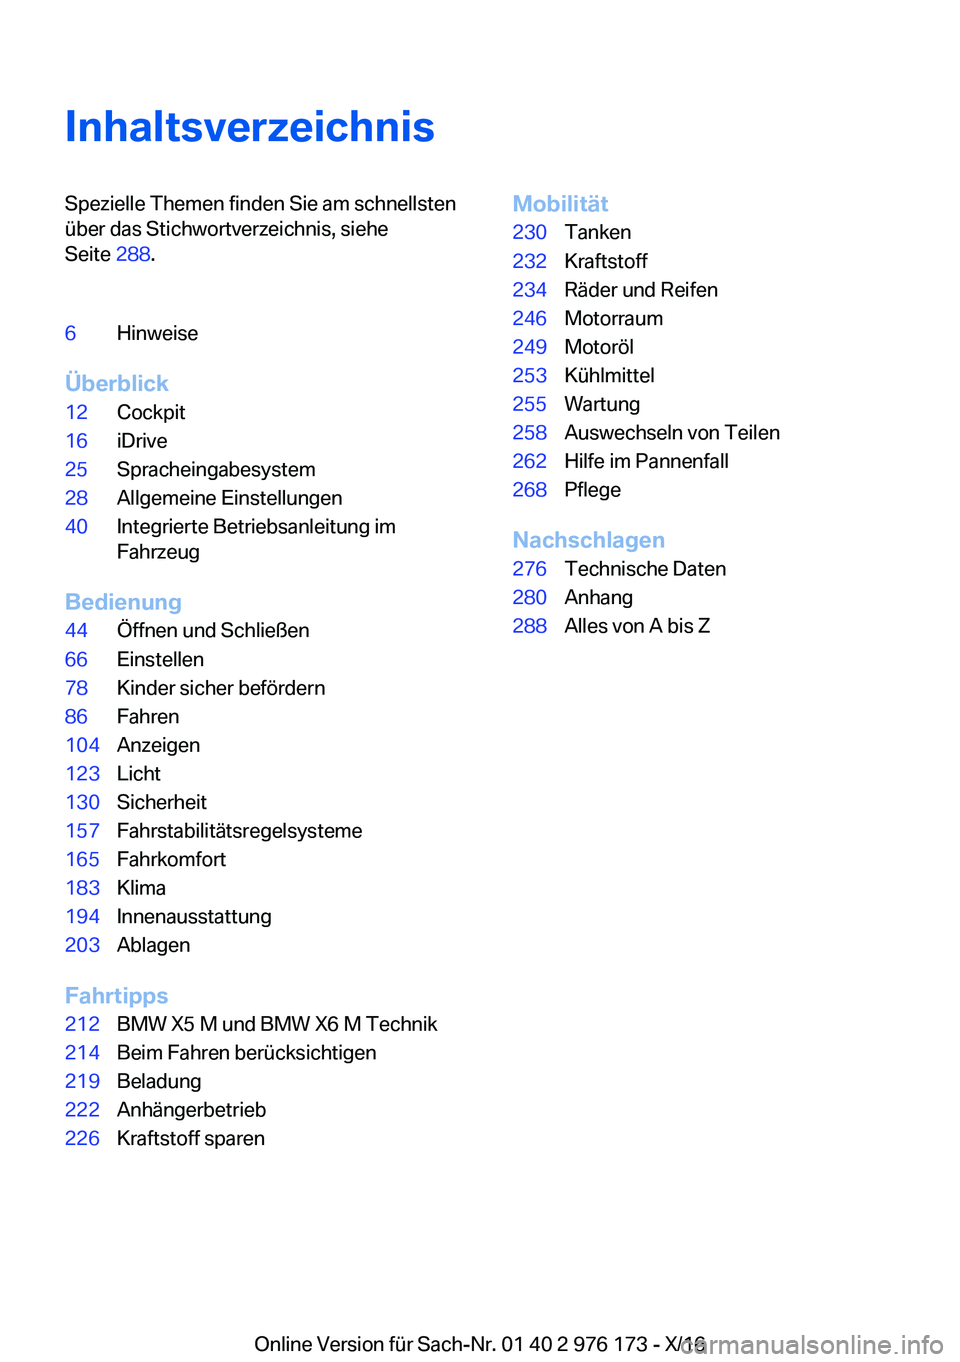 BMW X5 M 2017  Betriebsanleitungen (in German) �I�n�h�a�l�t�s�v�e�r�z�e�i�c�h�n�i�s�S�p�e�z�i�e�l�l�e� �T�h�e�m�e�n� �f�i�n�d�e�n� �S�i�e� �a�m� �s�c�h�n�e�l�l�s�t�e�n
�ü�b�e�r� �d�a�s� �S�t�i�c�h�w�o�r�t�v�e�r�z�e�i�c�h�n�i�s�,� �s�i�e�h�e
�S�e�